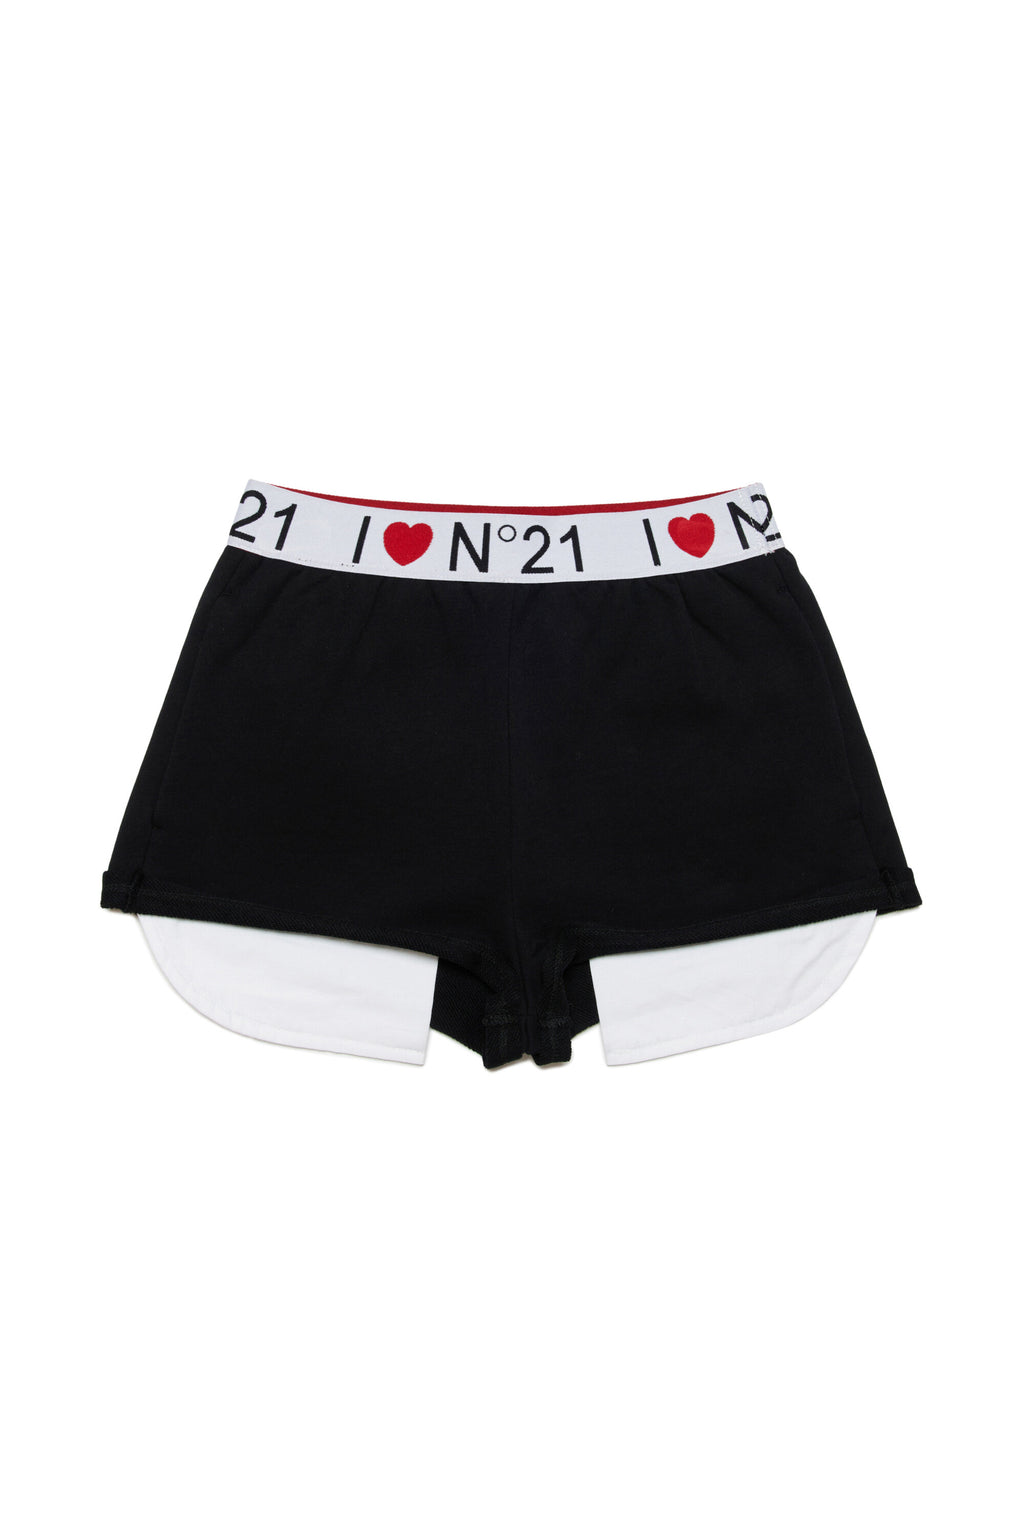 Pantalones cortos en chándal con logotipo I Love N°21